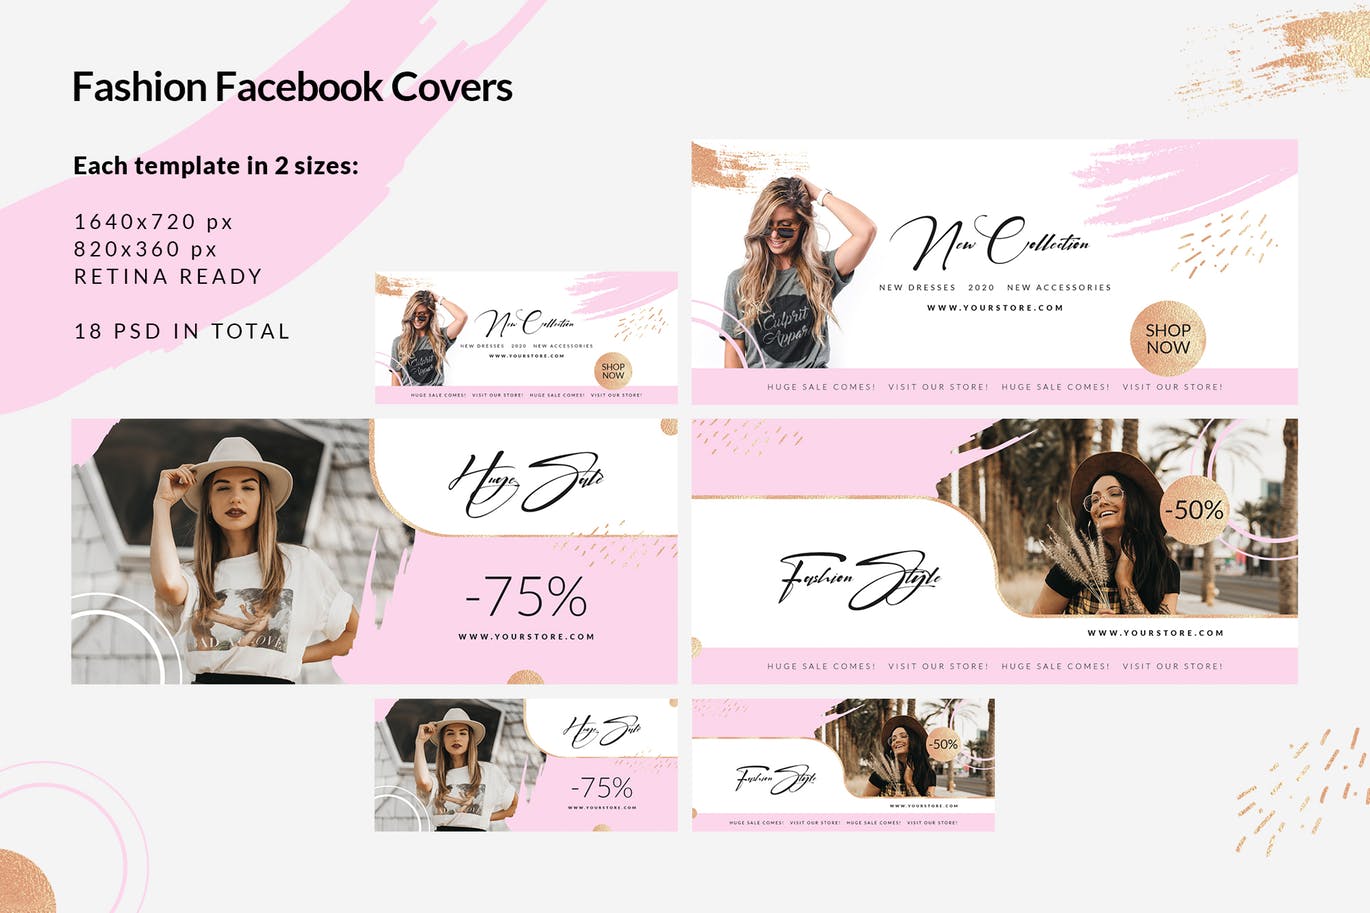 时尚品牌打折促销Facebook封面设计模板非凡图库精选 Fashion Facebook Covers插图(2)